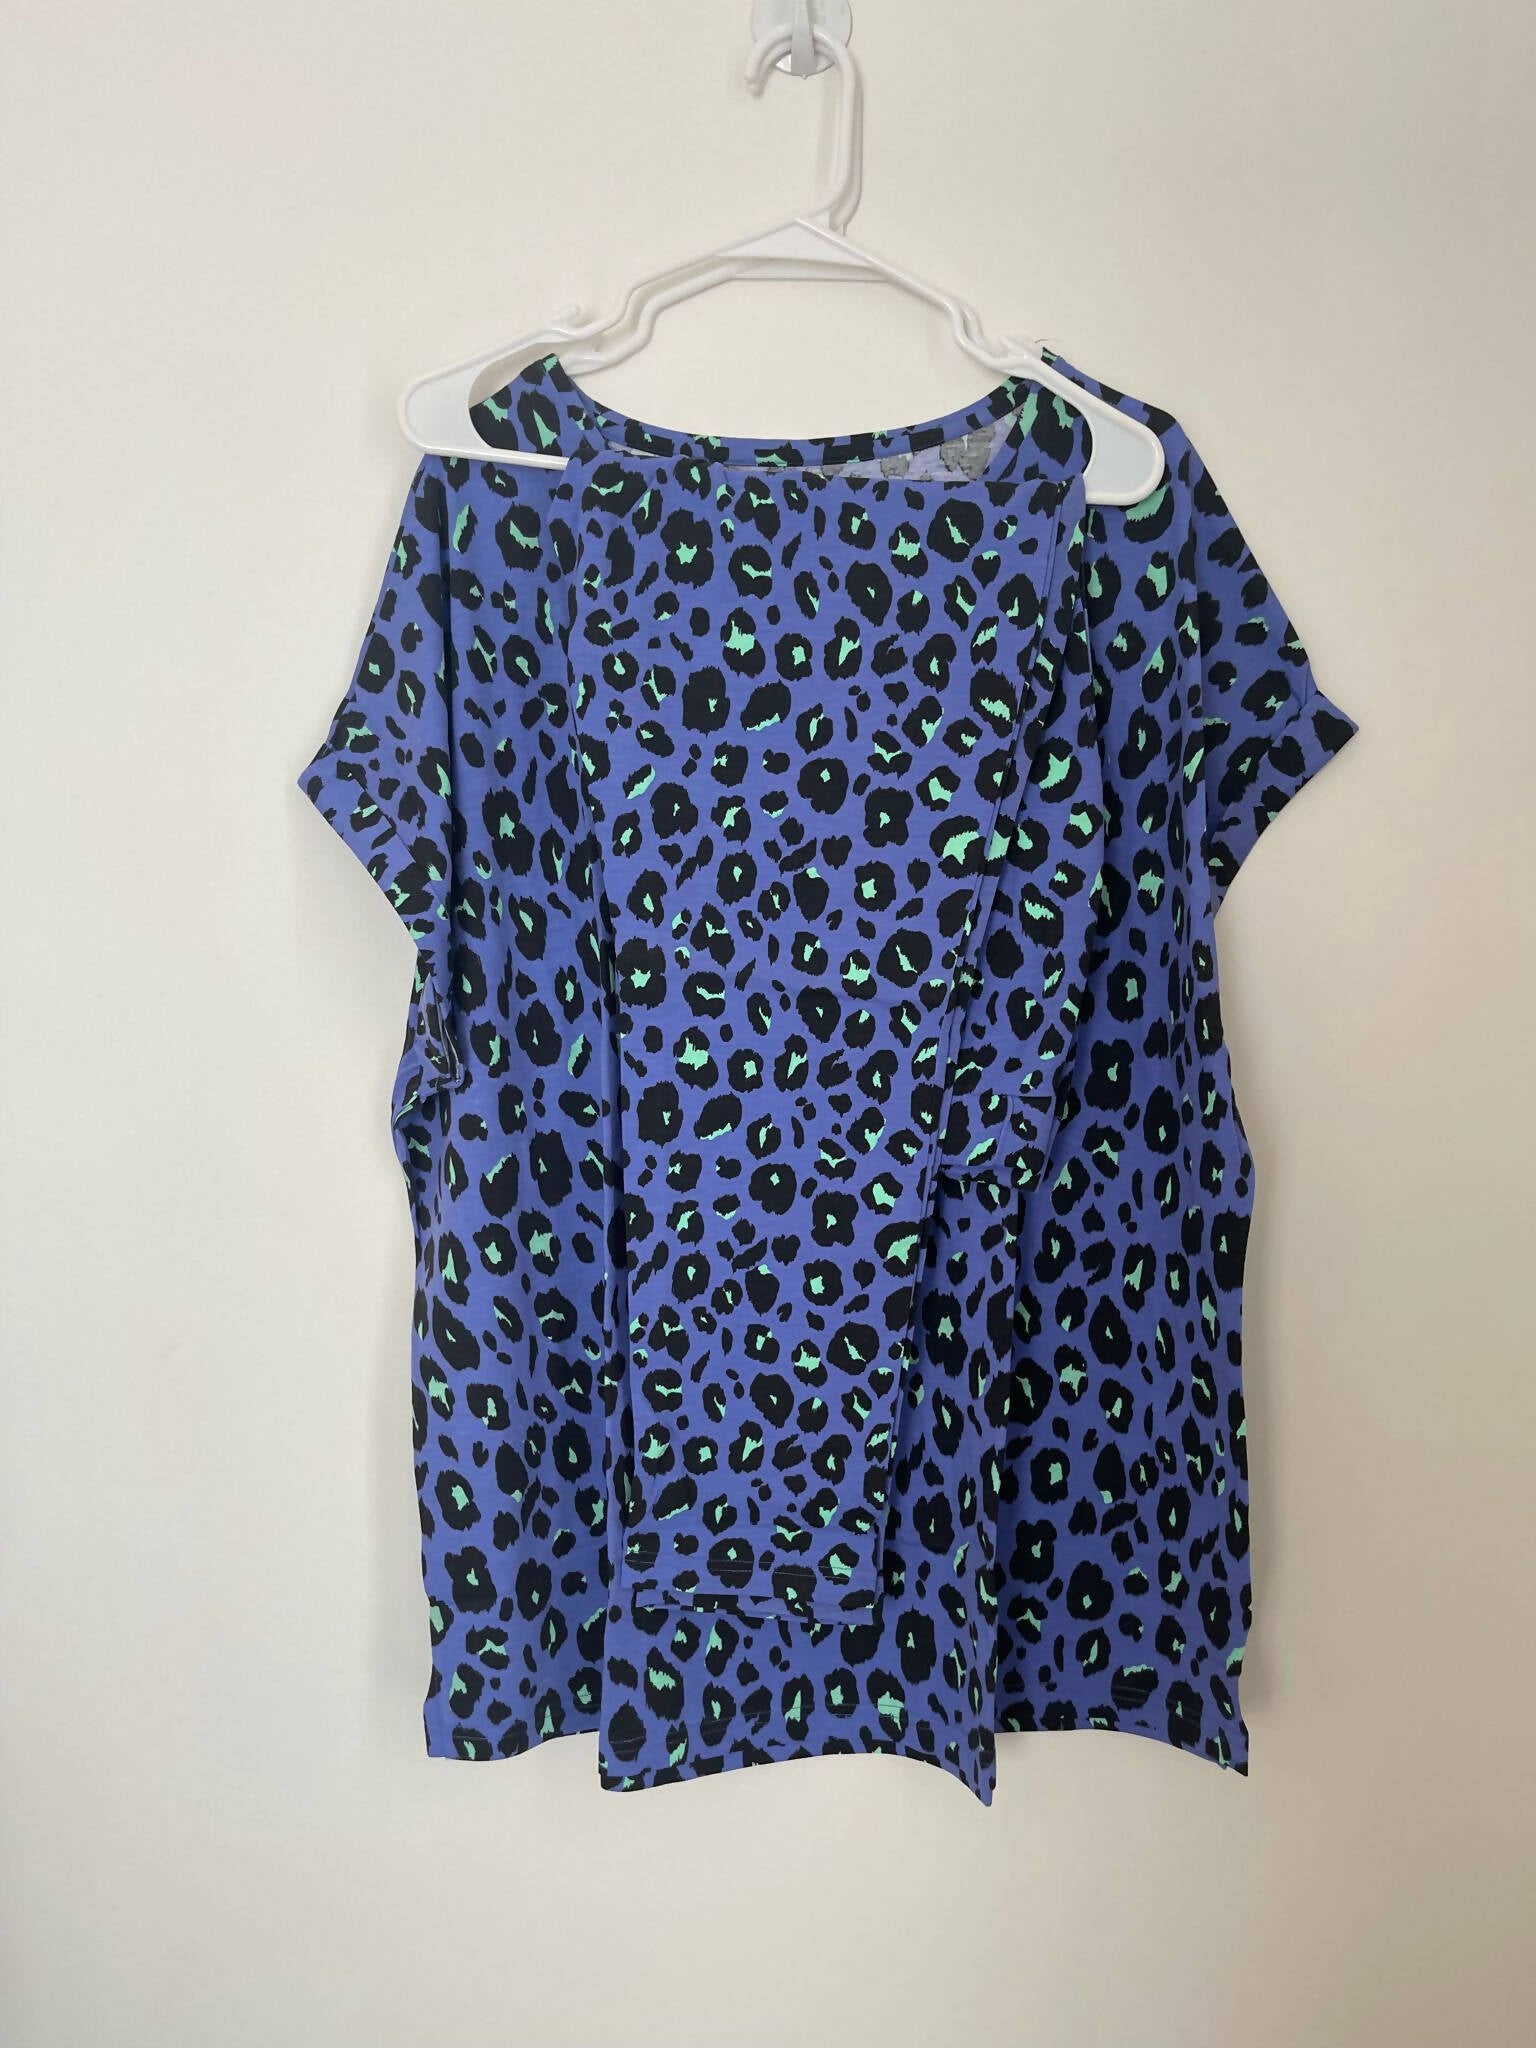 Zenith | Blue PJ Sets (Size: Extra Large, 20/22) | Women Loungewear & Sleepwear | Brand New